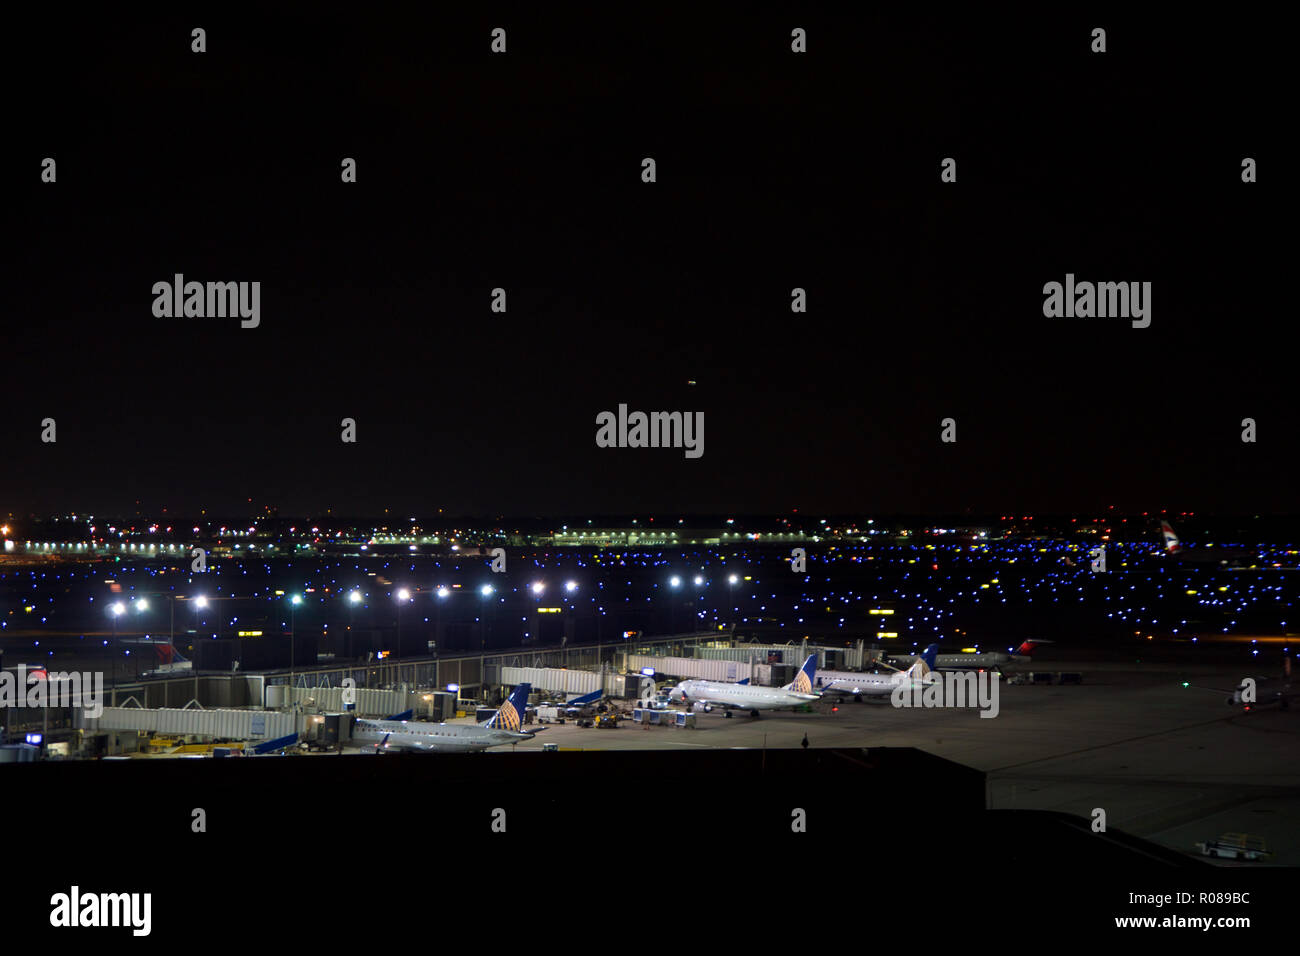 CHICAGO, Illinois, Vereinigte Staaten - 11. MAI 2018: Mehrere Flugzeuge am Gate am Chicago O'Hare International Airport in der Nacht. Stockfoto